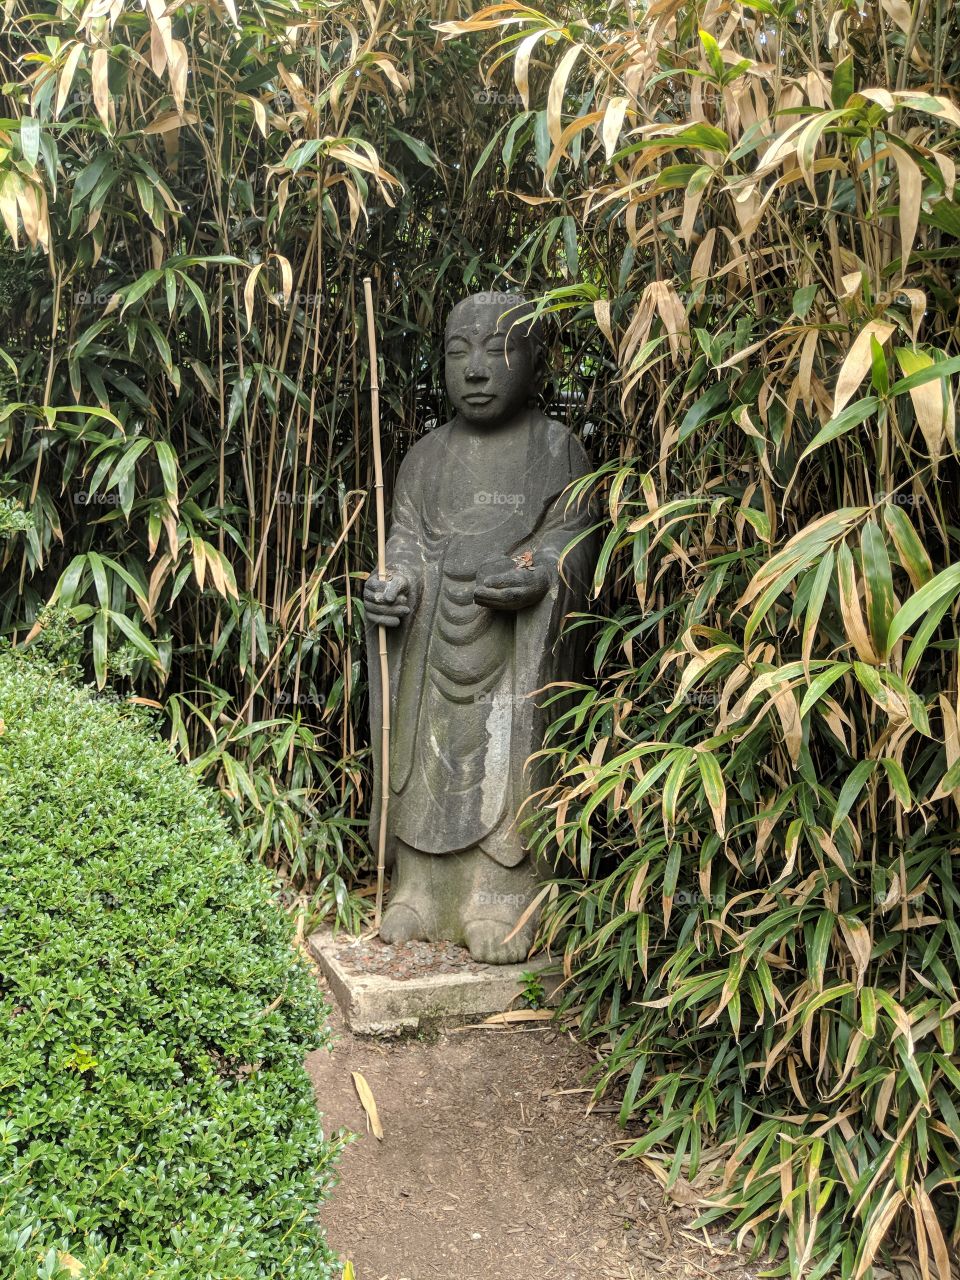 Stone Buddha amongst green bamboo.